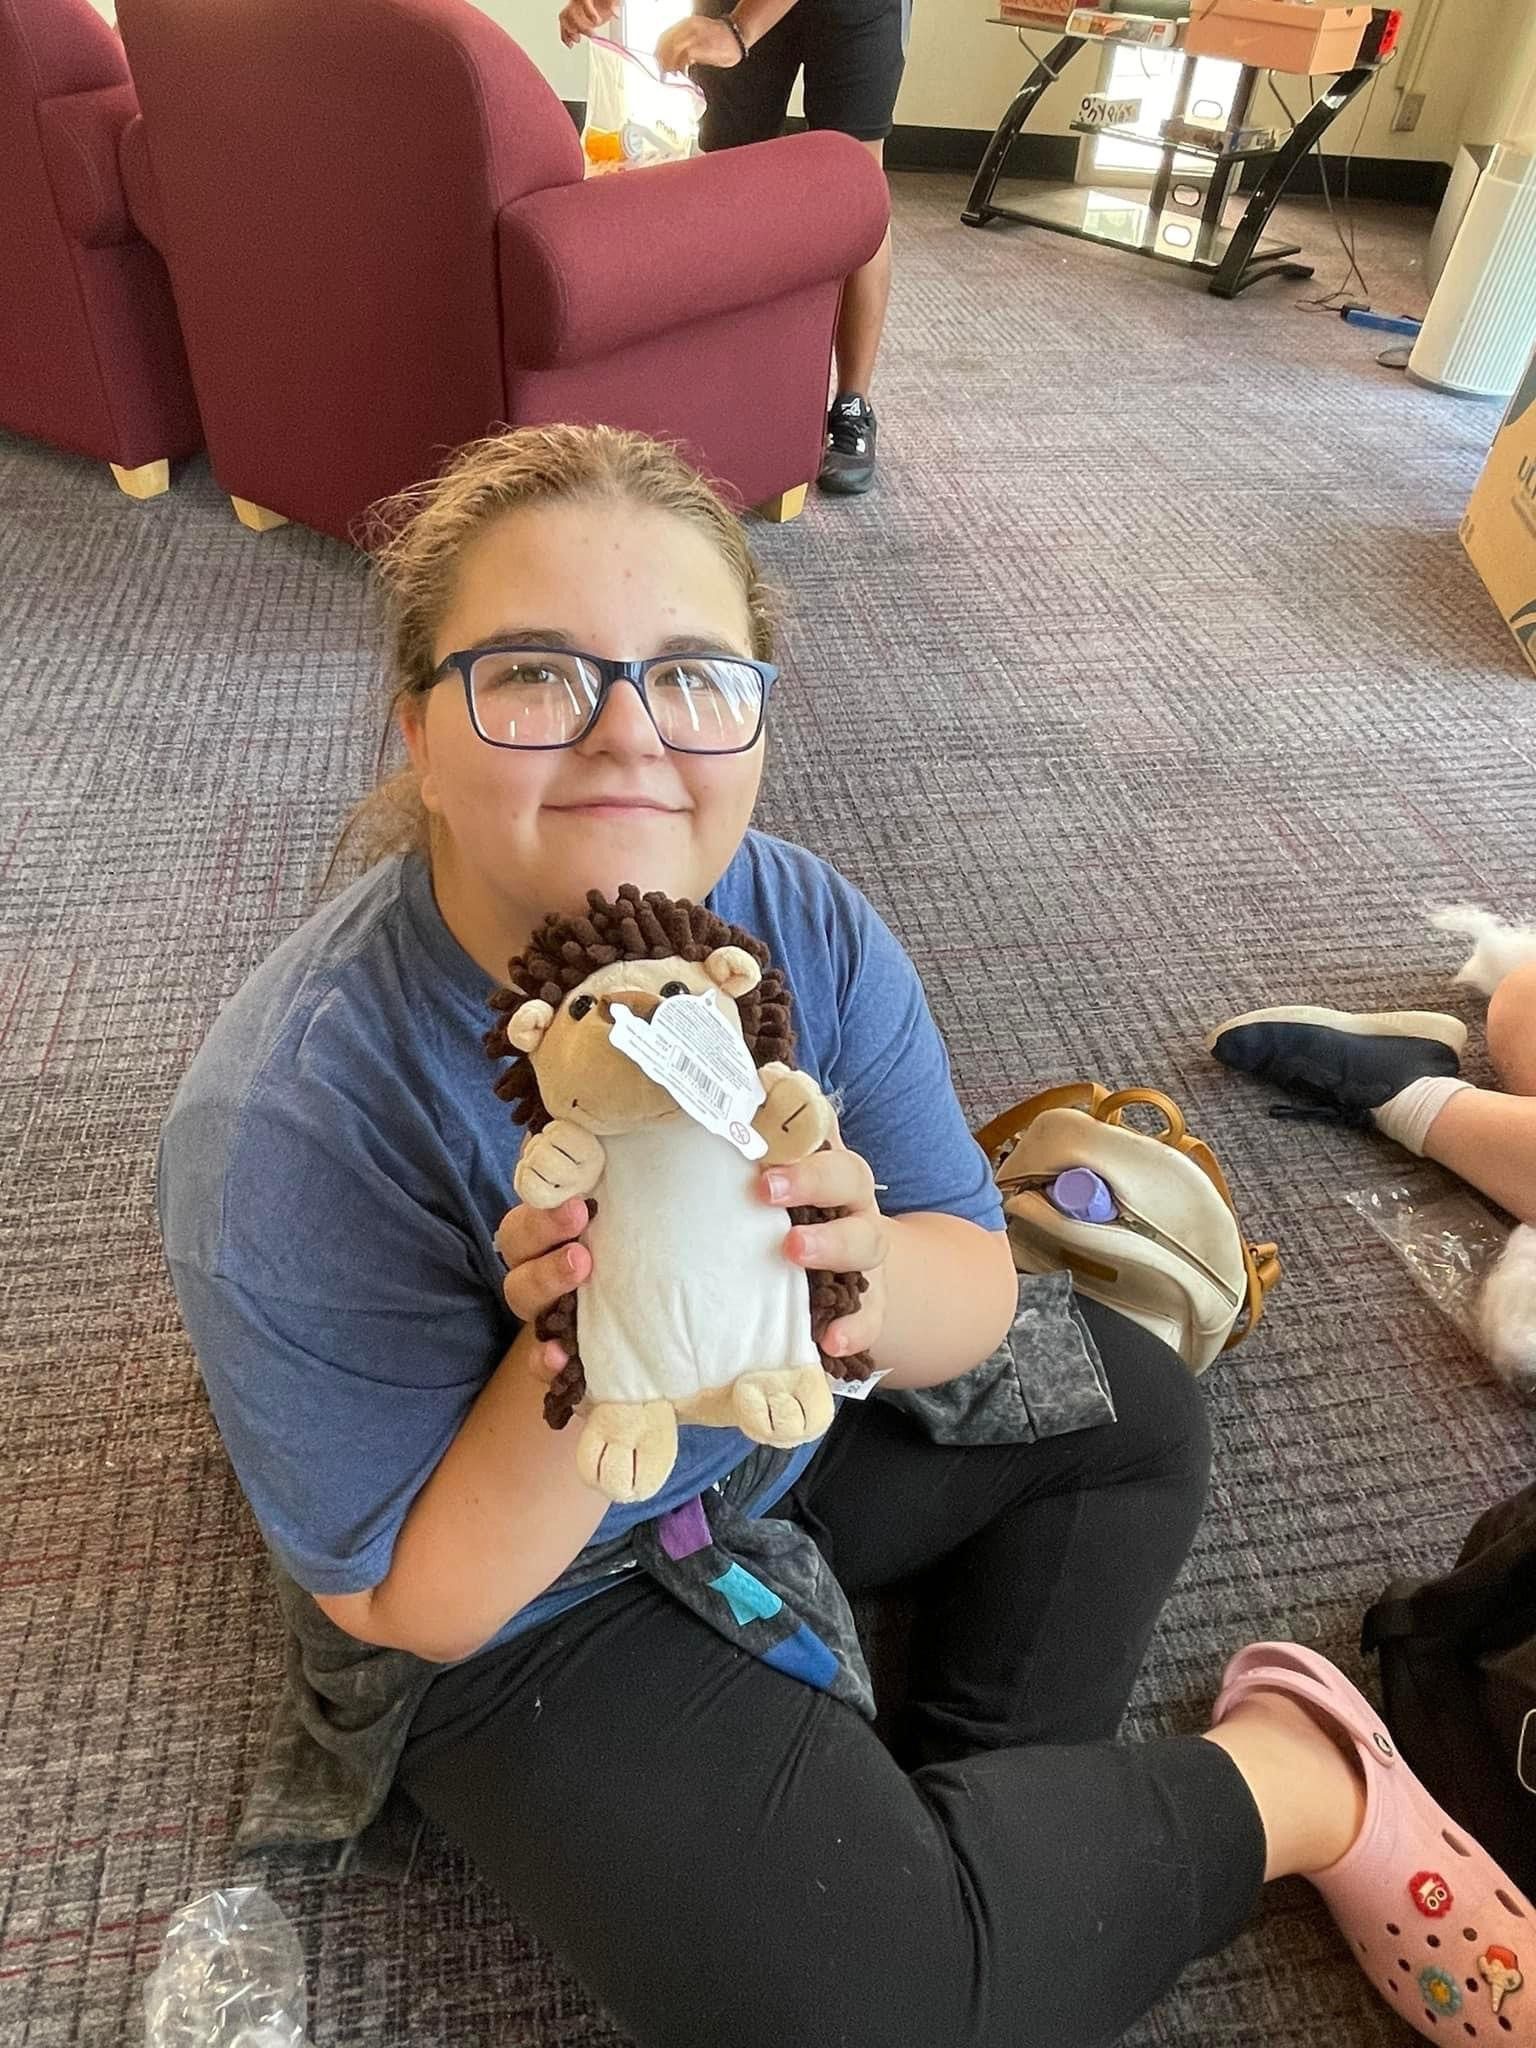 An Upward Bound student holding a stuffed animal